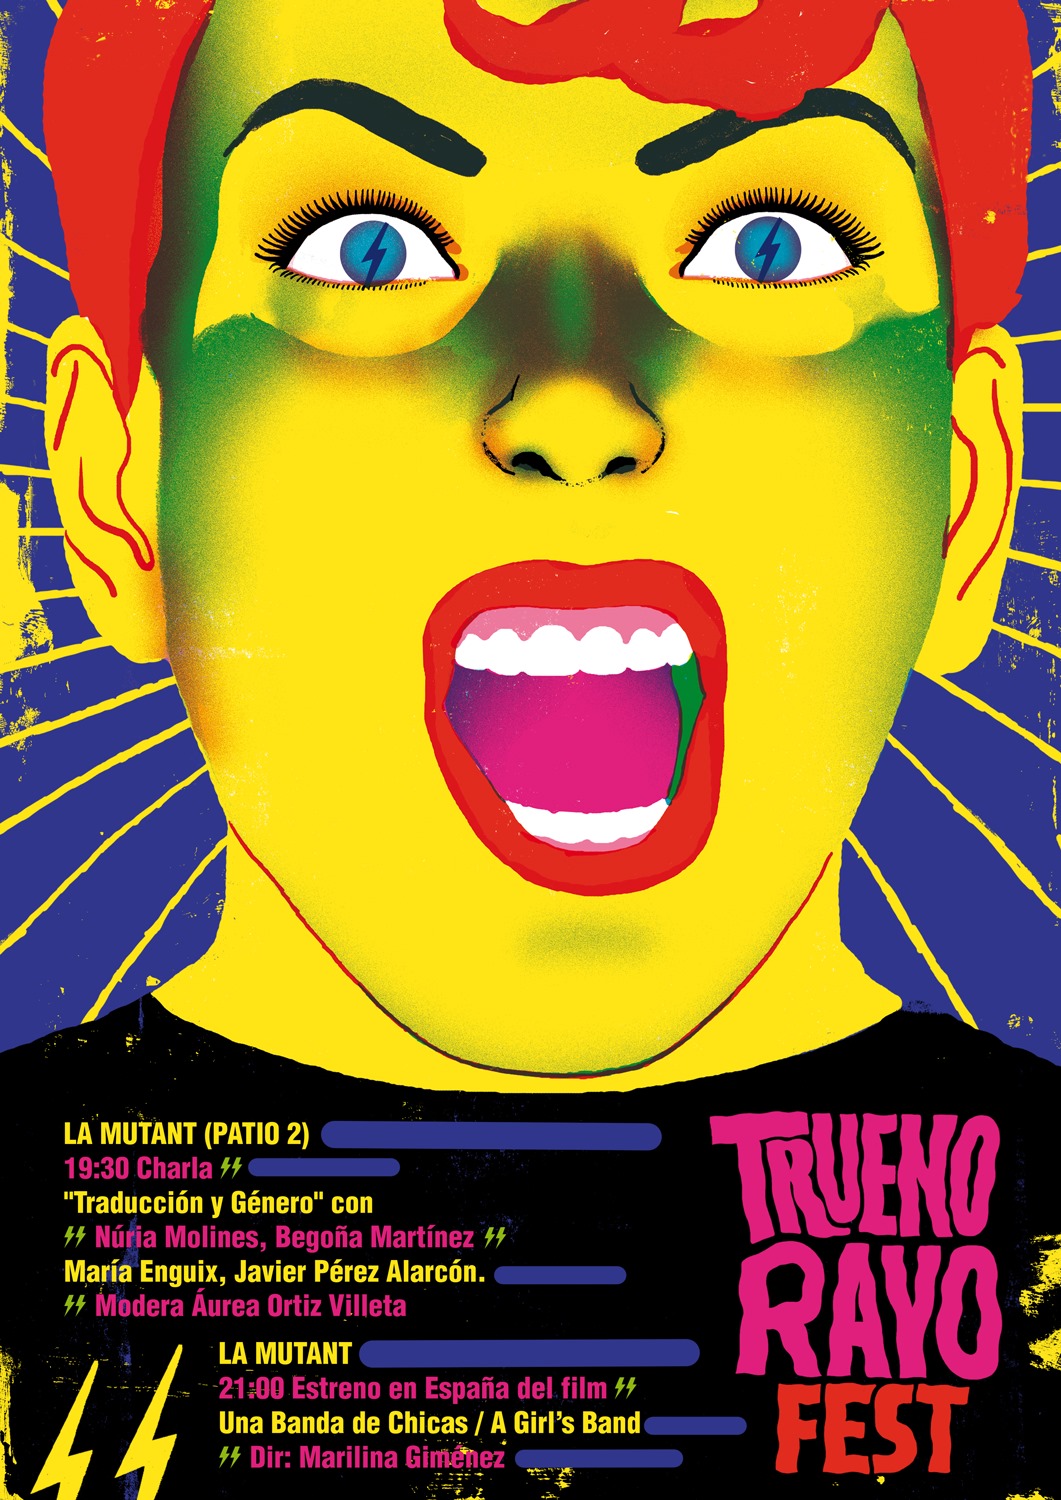 TruenoRayo Fest